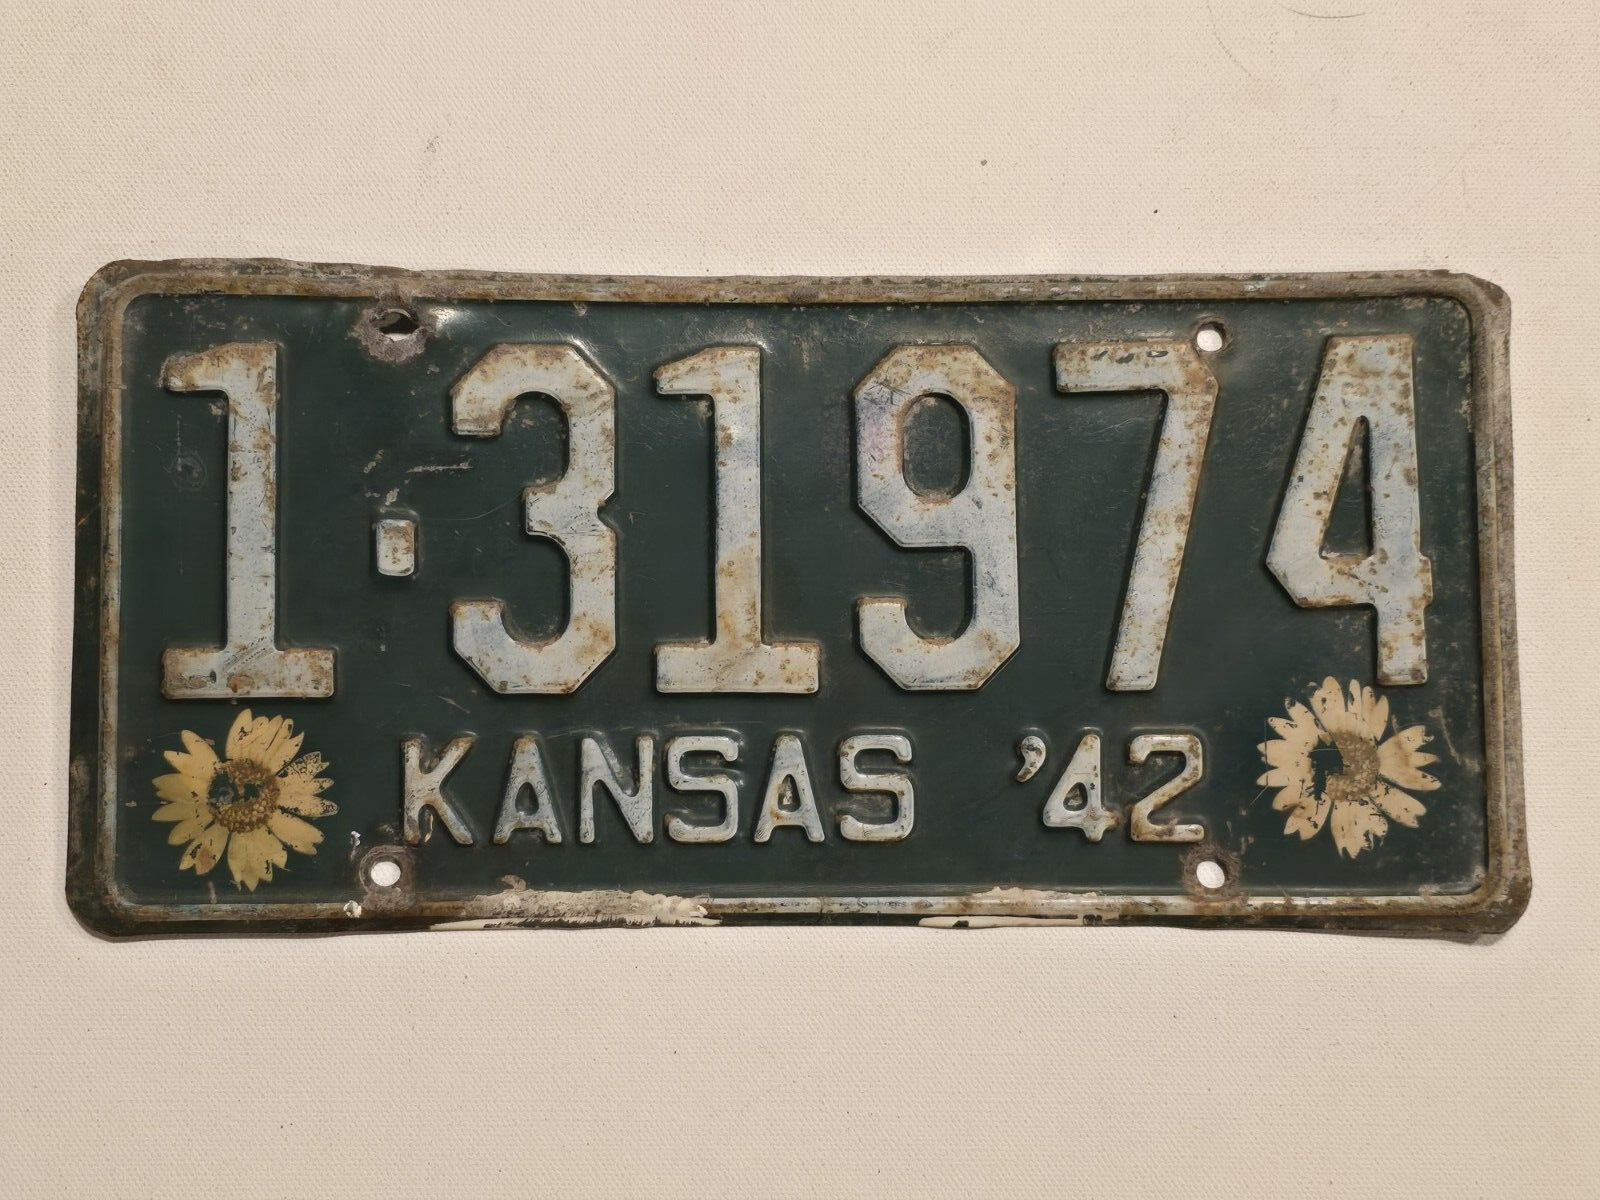 KANSAS-1942- License Plate #1-31974 - STATE NATIVE SUNFLOWER - VTG - Man Cave